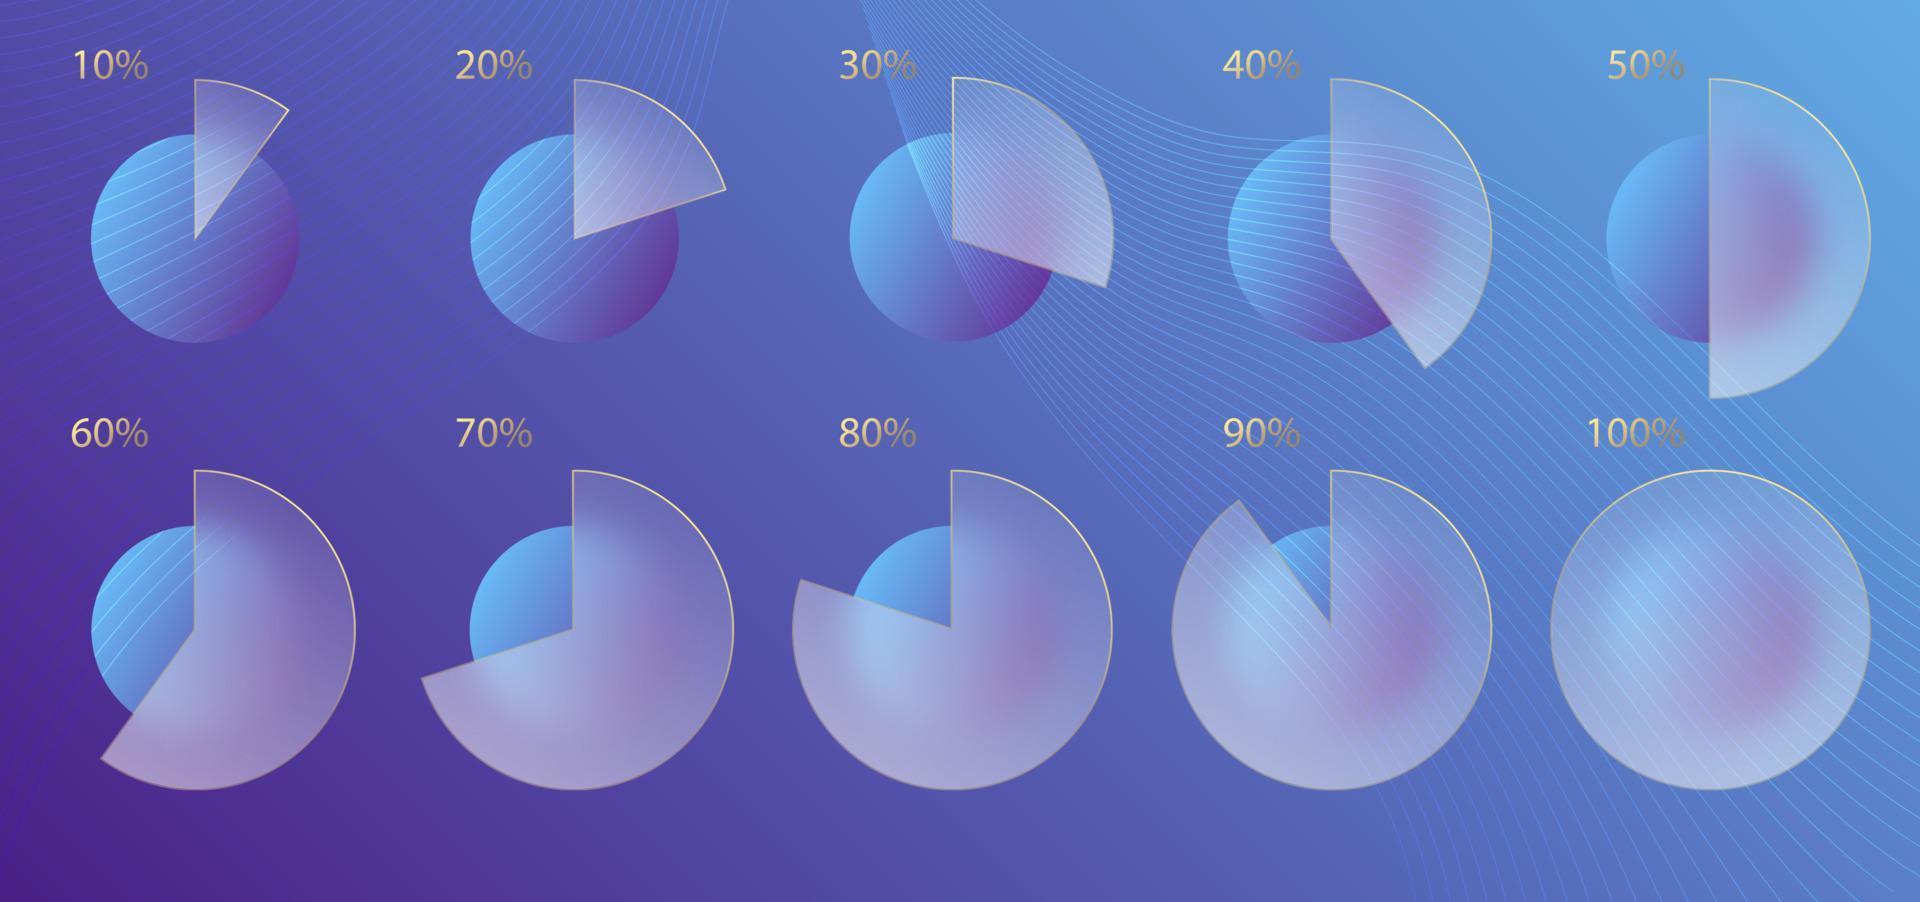 glasmorfismeffekt. uppsättning av transparent frostad akryl diagram infographic procent. blå gradient cirklar på violett bakgrund. realistisk glasmorfism matt plexiglas form. vektor